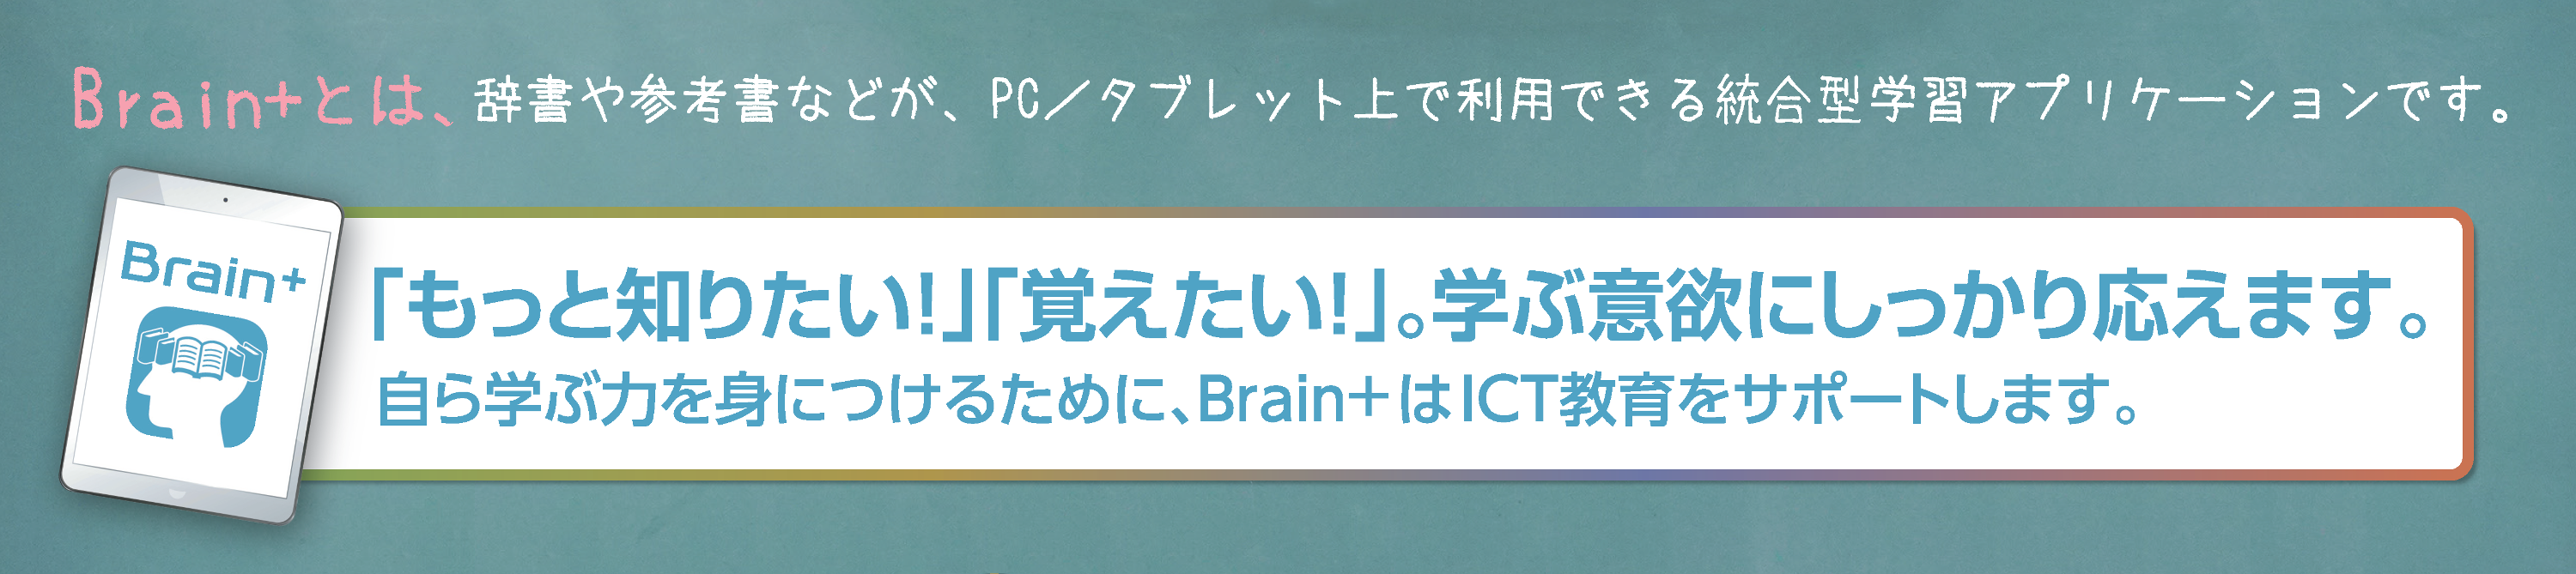 Brain+ bunner